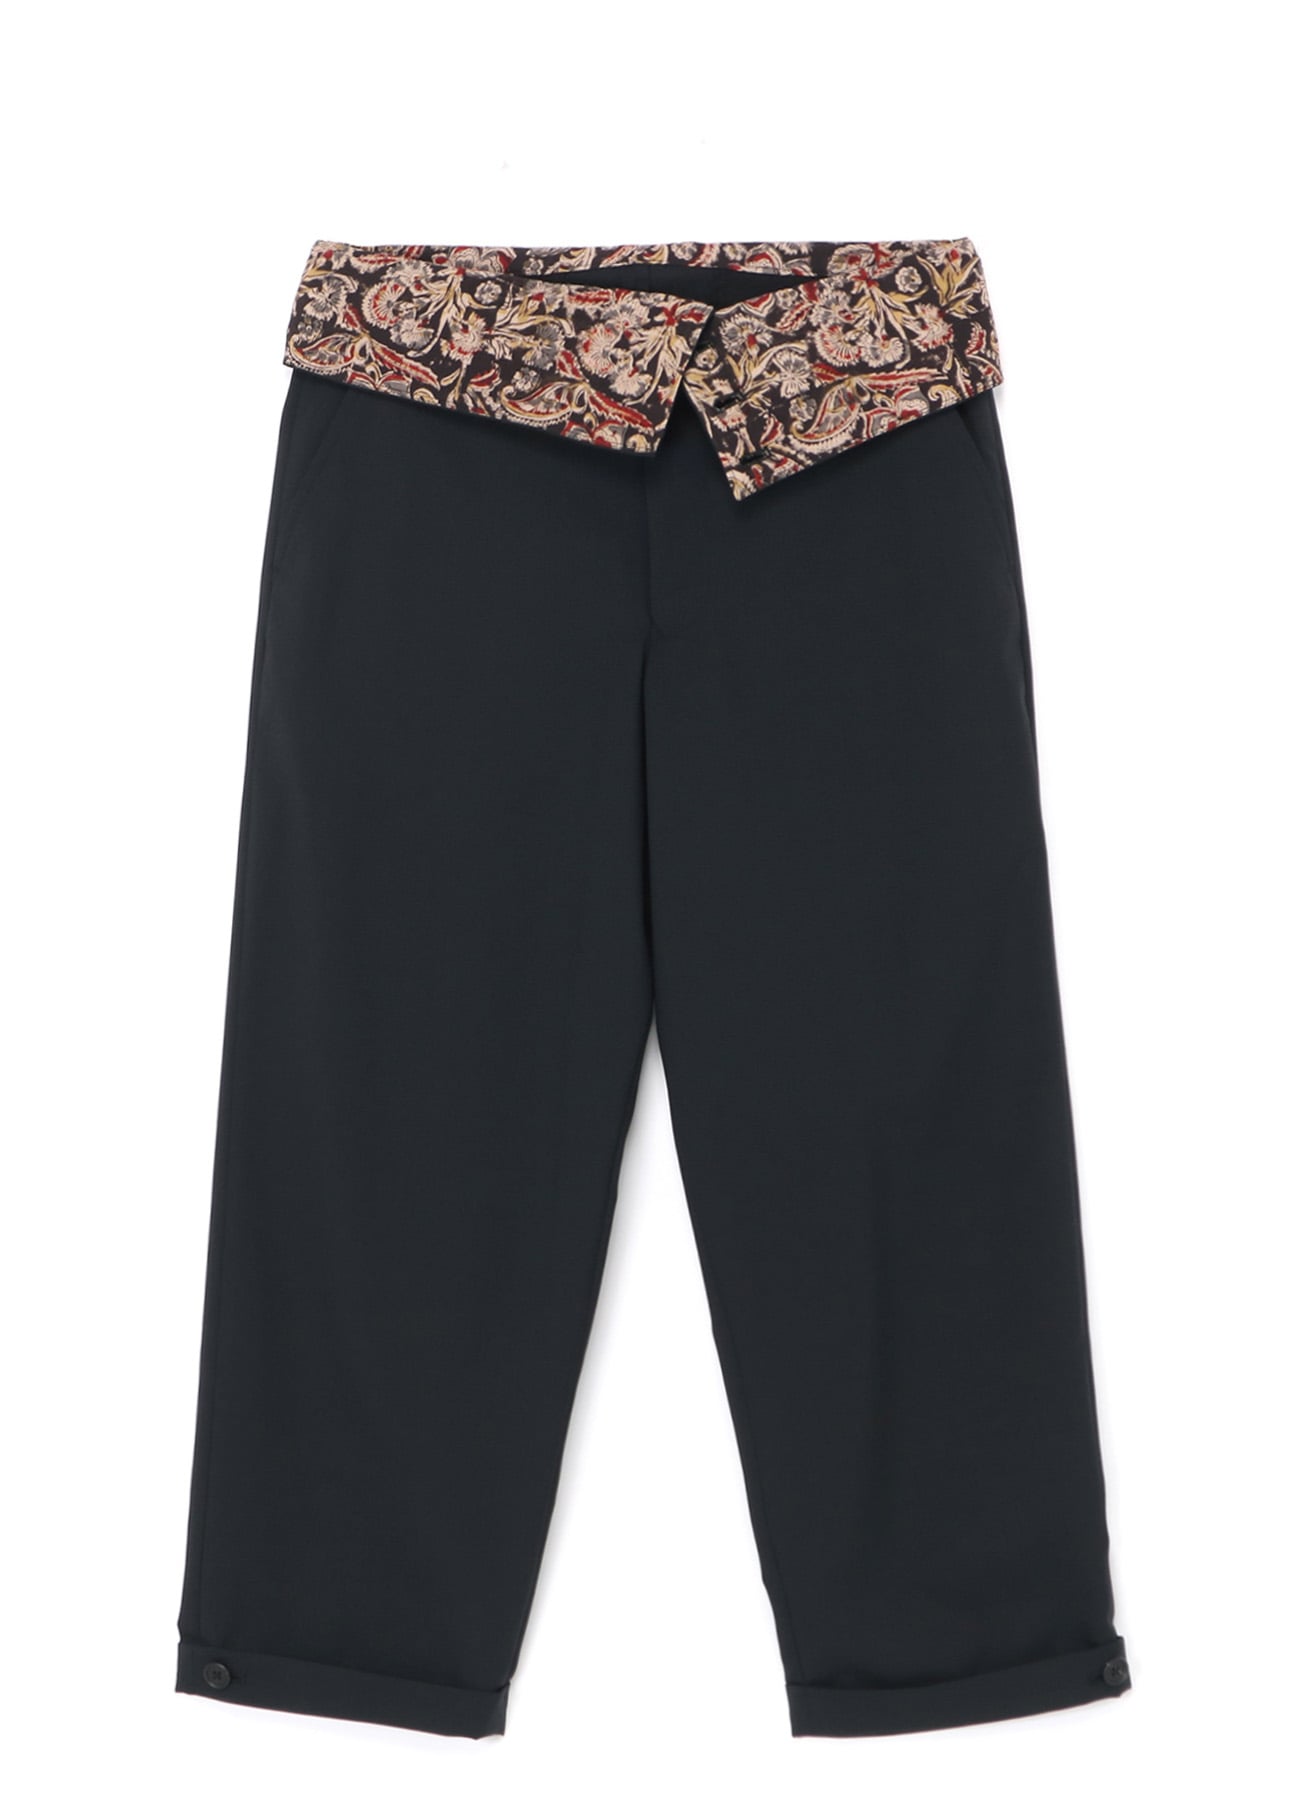 Printed Crop Top And Flared Pant Set by Nirmooha at Aza Fashions | Lehenga  crop top, Fashion, Print crop tops